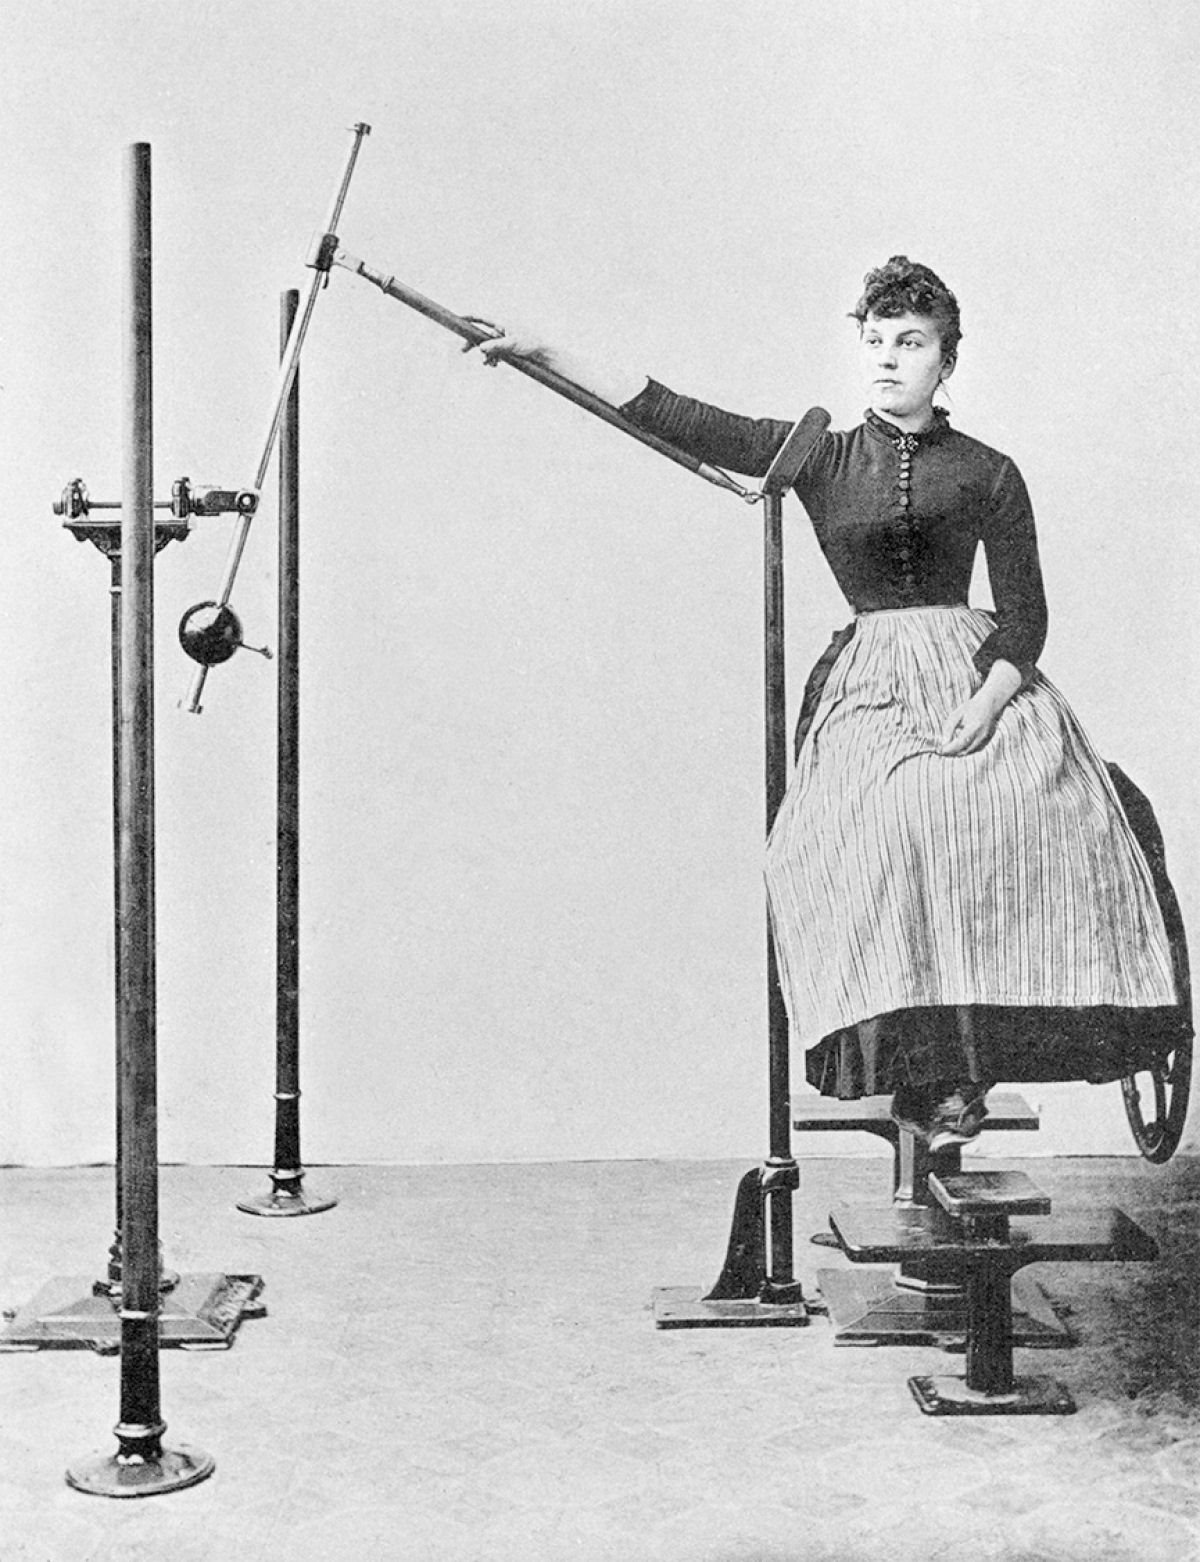 Suor e corset. Academia mecânica no século XIX 02